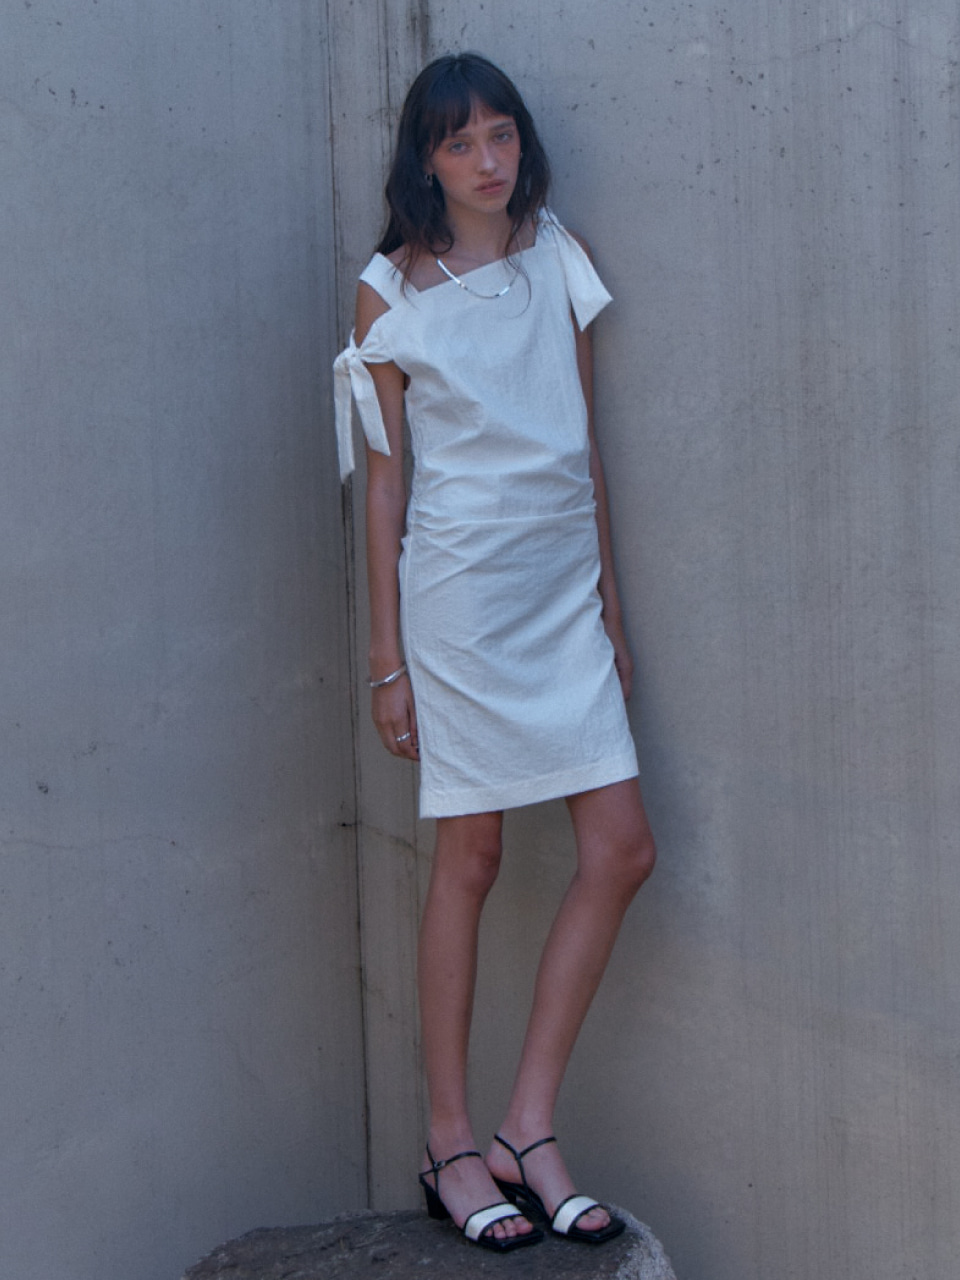 ROUGE Waist Side Shirring Nylon Sleeveless Dress_White